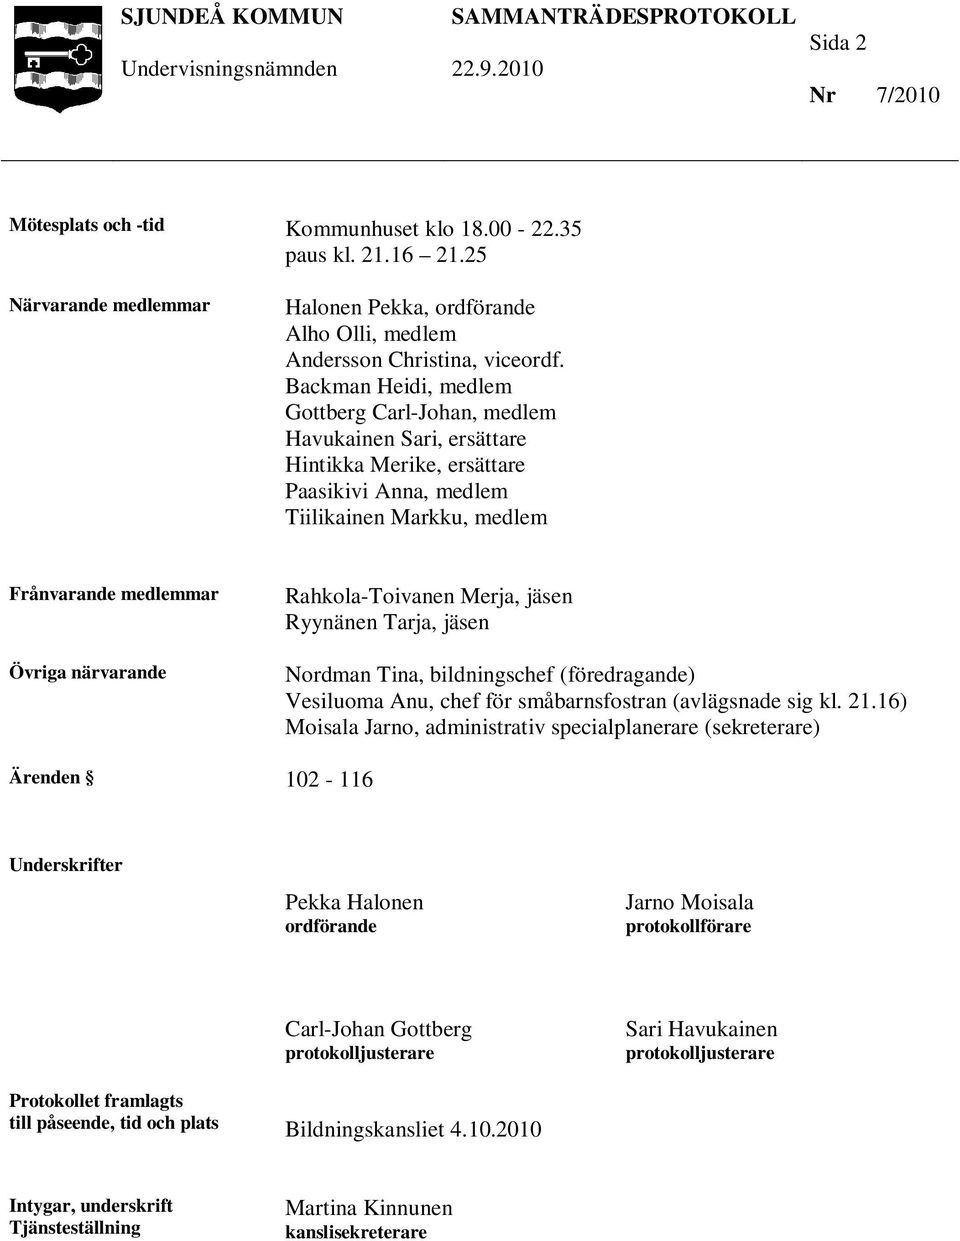 Rahkola-Toivanen Merja, jäsen Ryynänen Tarja, jäsen Nordman Tina, bildningschef (föredragande) Vesiluoma Anu, chef för småbarnsfostran (avlägsnade sig kl. 21.